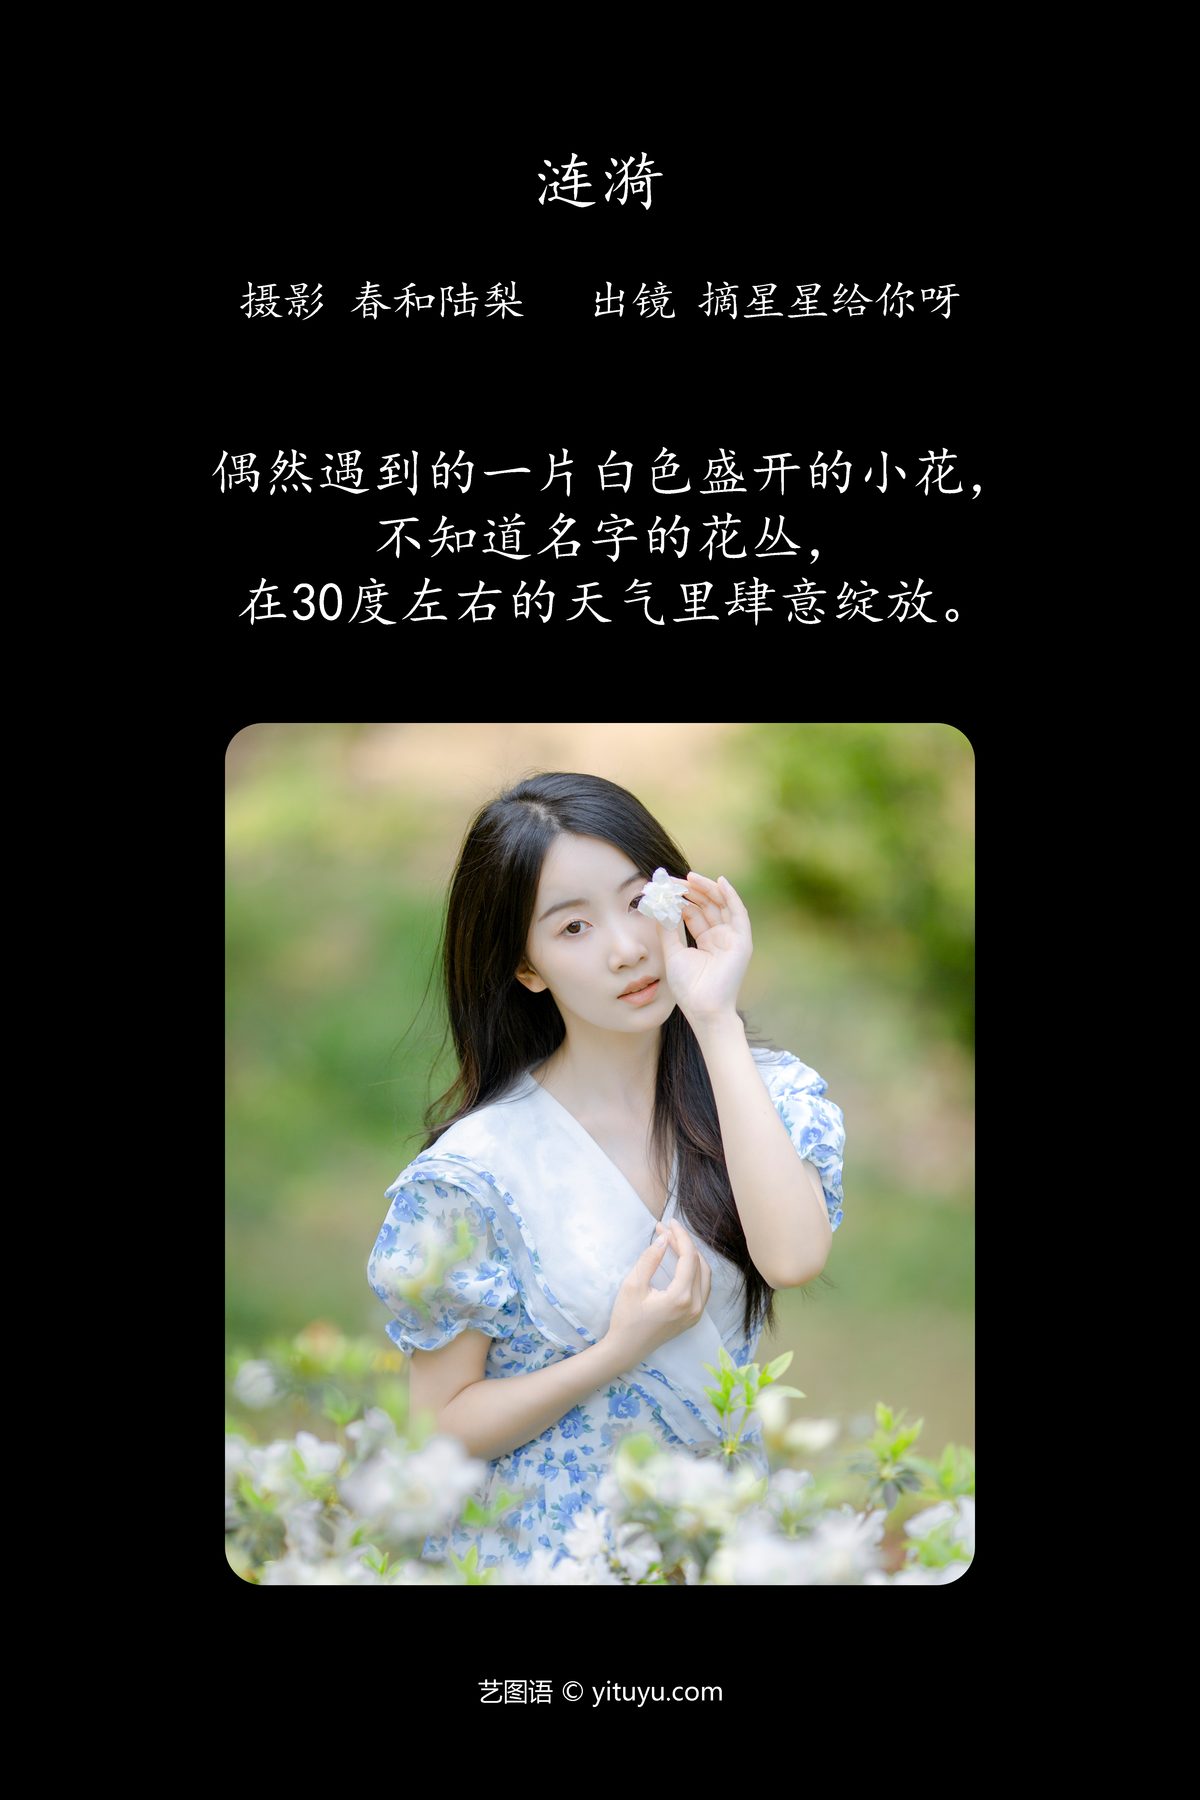 YiTuYu艺图语 Vol 4603 Zhai Xing Xing Gei Ni Ya 0001 6846711324.jpg